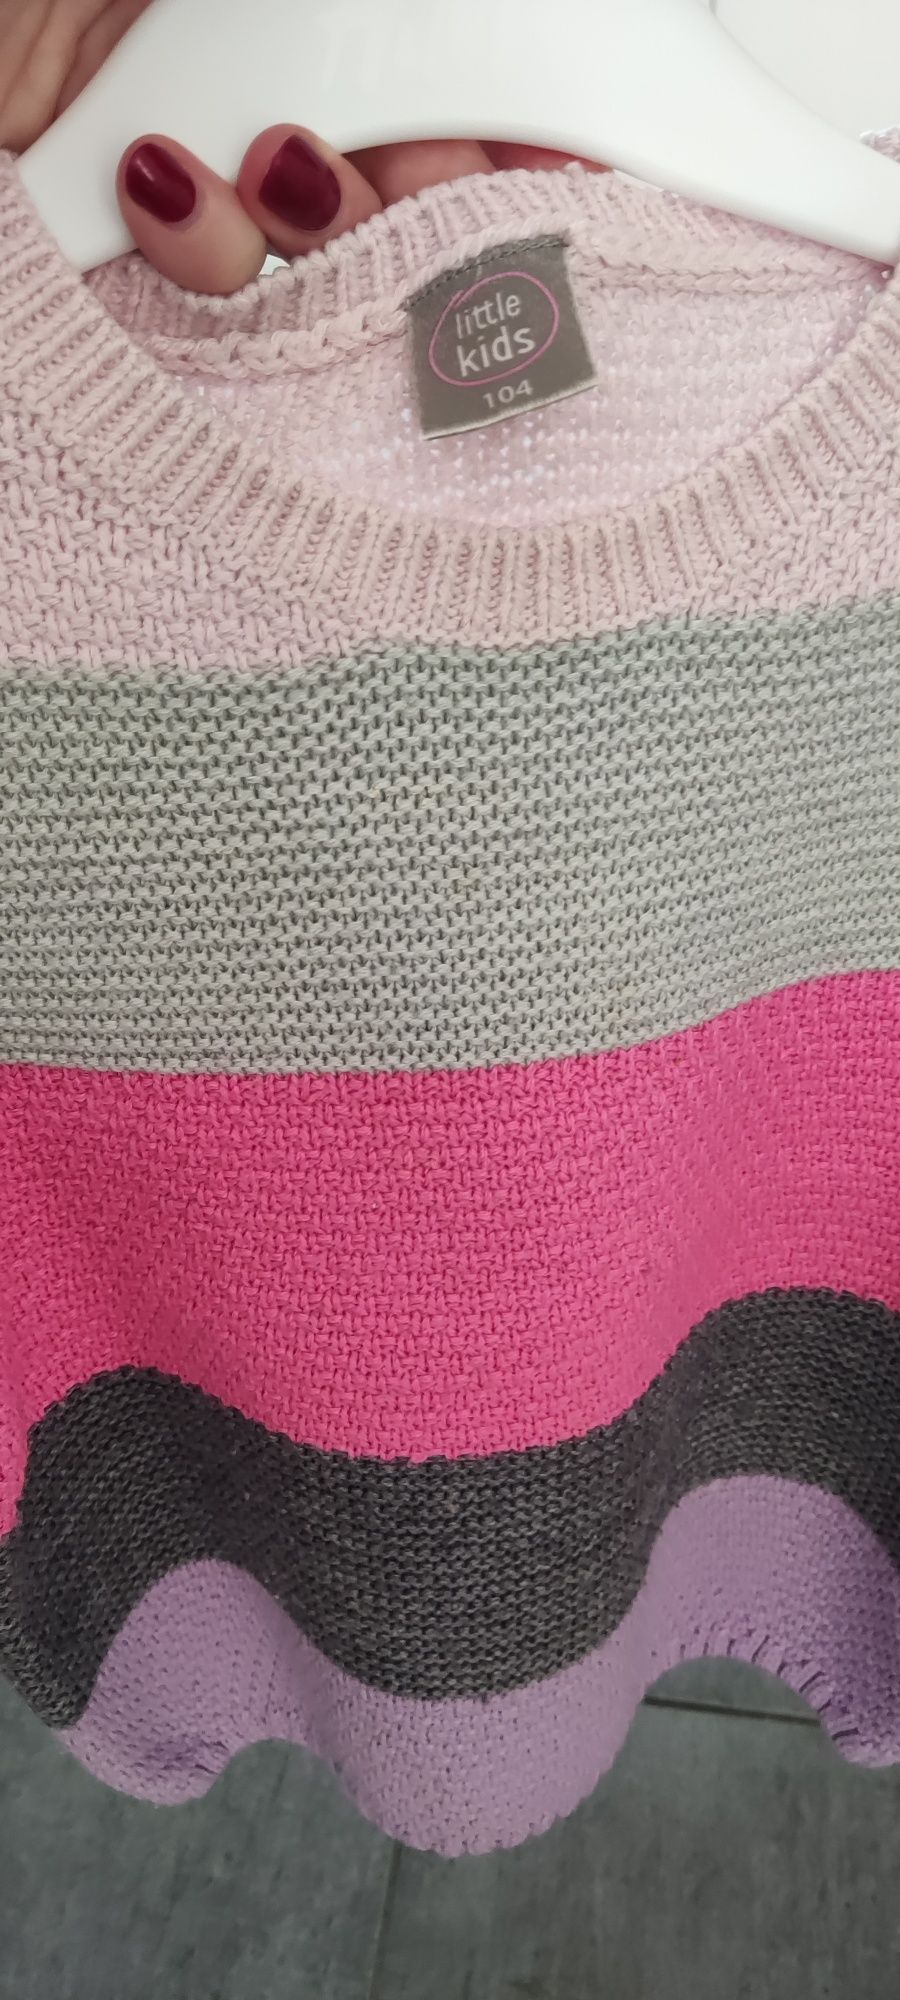 Kolorowy sweterek dla dziewczynki, rozmiar 104.